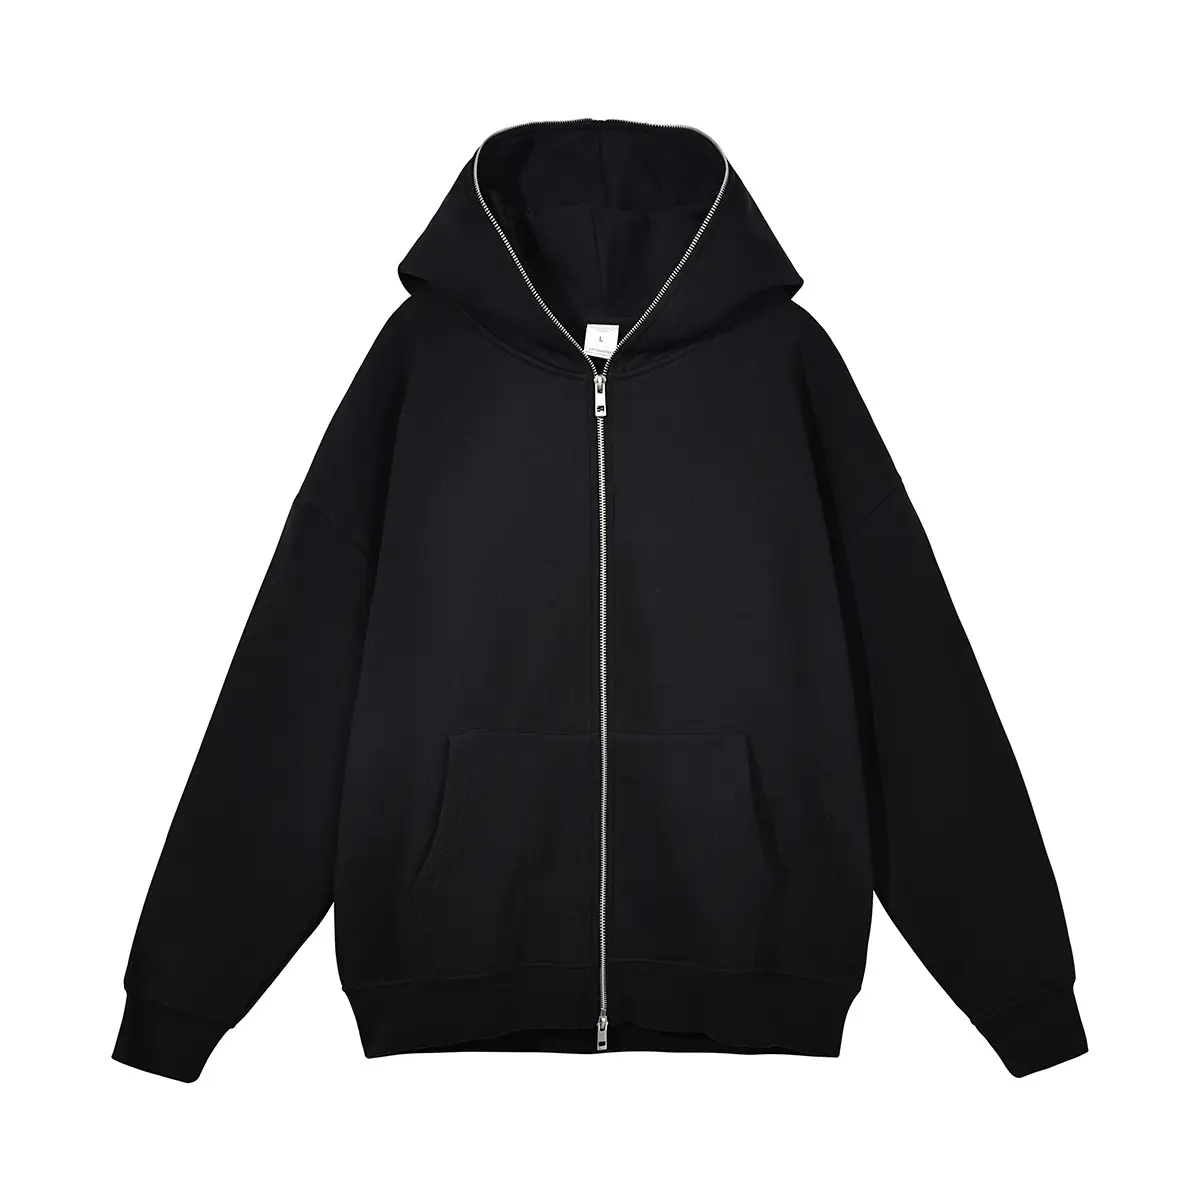 New Custom Metal Zipper Hoodie Hip Hop Brand Loose Casual Cardigan Jacket Zip Up Hoodie